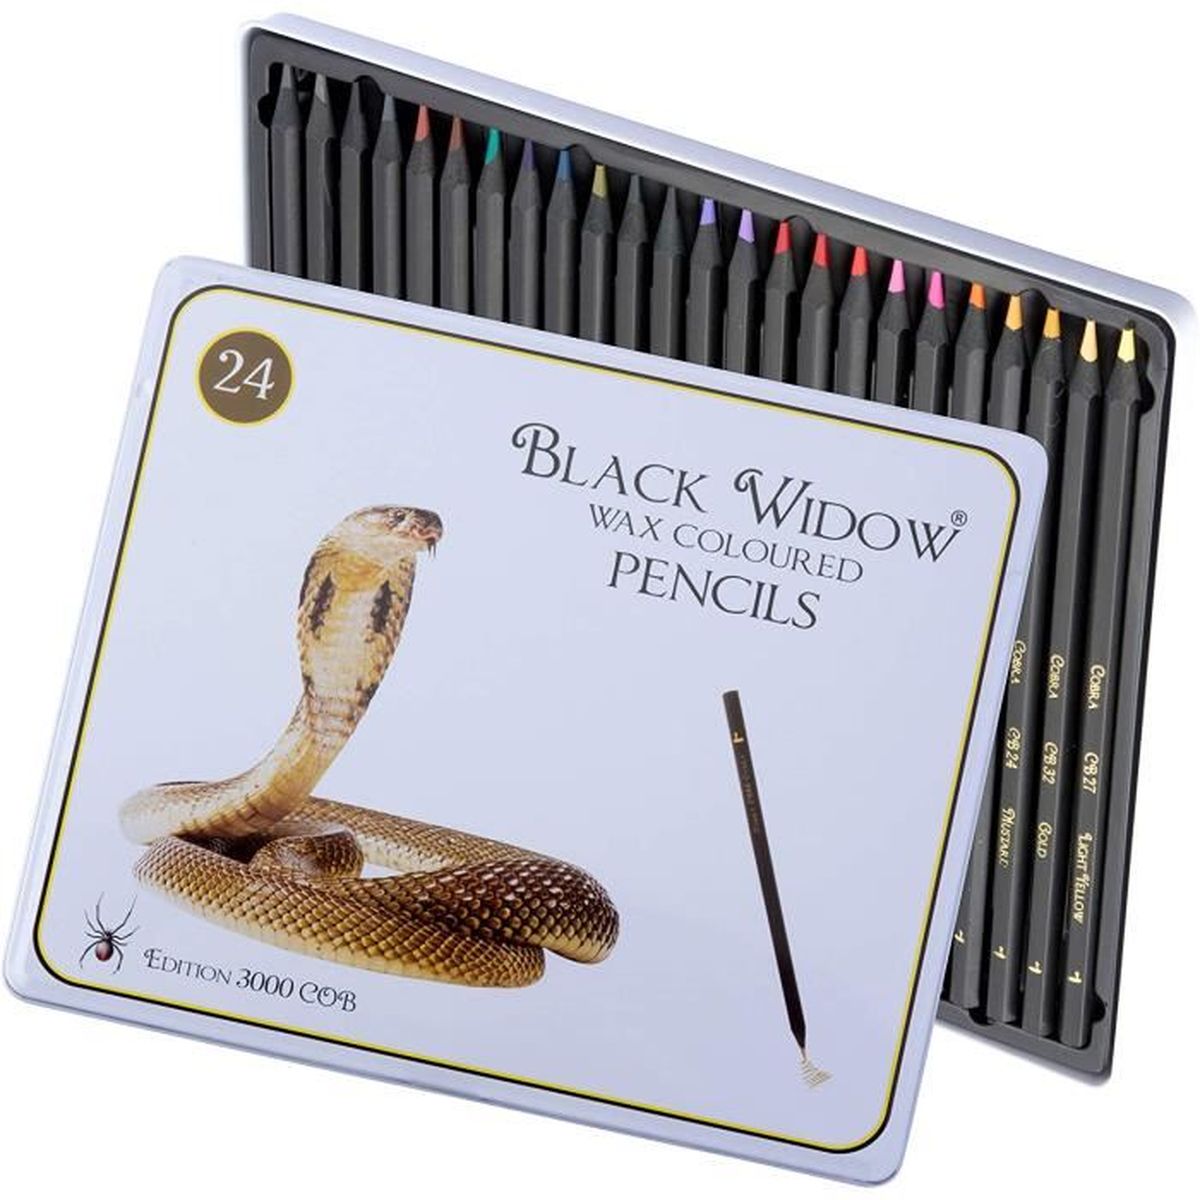 Meilleurs crayons de couleur pour livres de coloriage et dessins pour adultes 48 crayons de couleur avec des pigments intenses et faciles à mélanger Crayons de couleur Black Widow pour adultes 